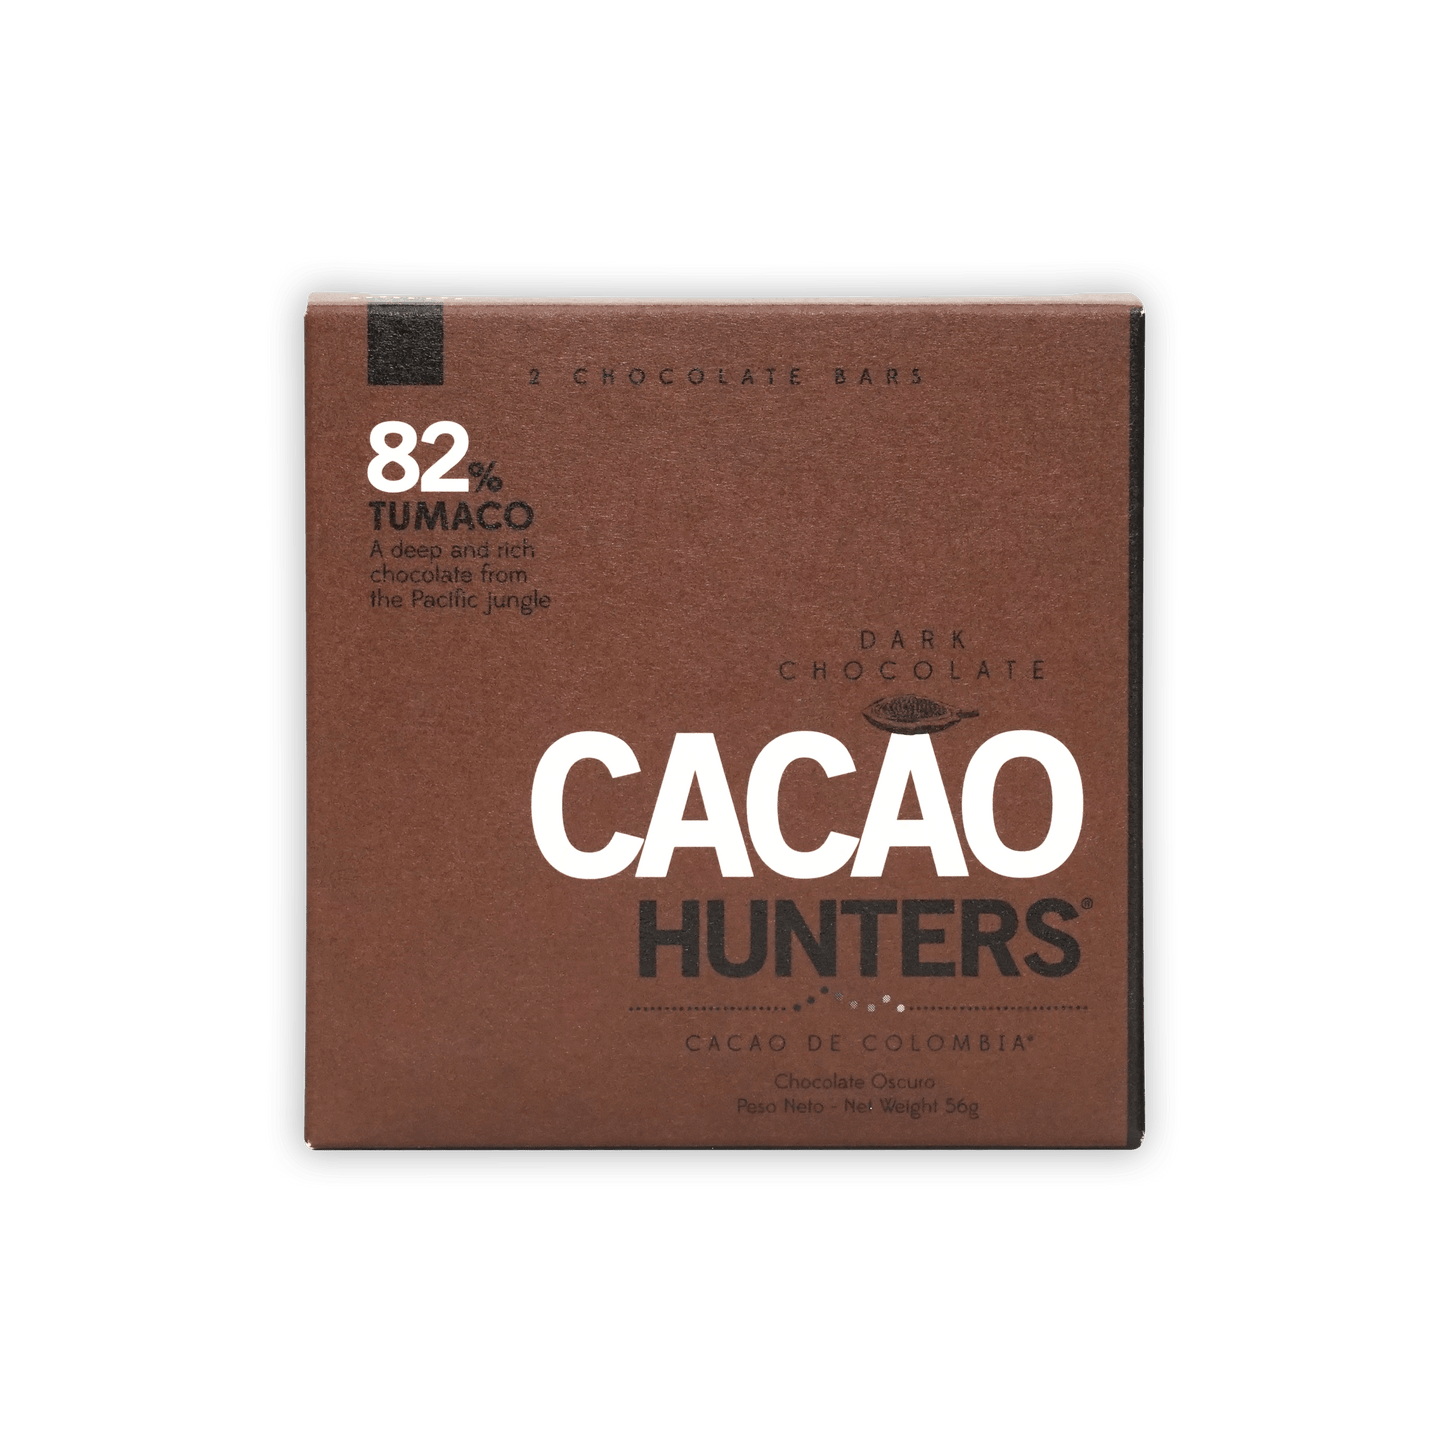 Cacao Hunters Tumaco 82%